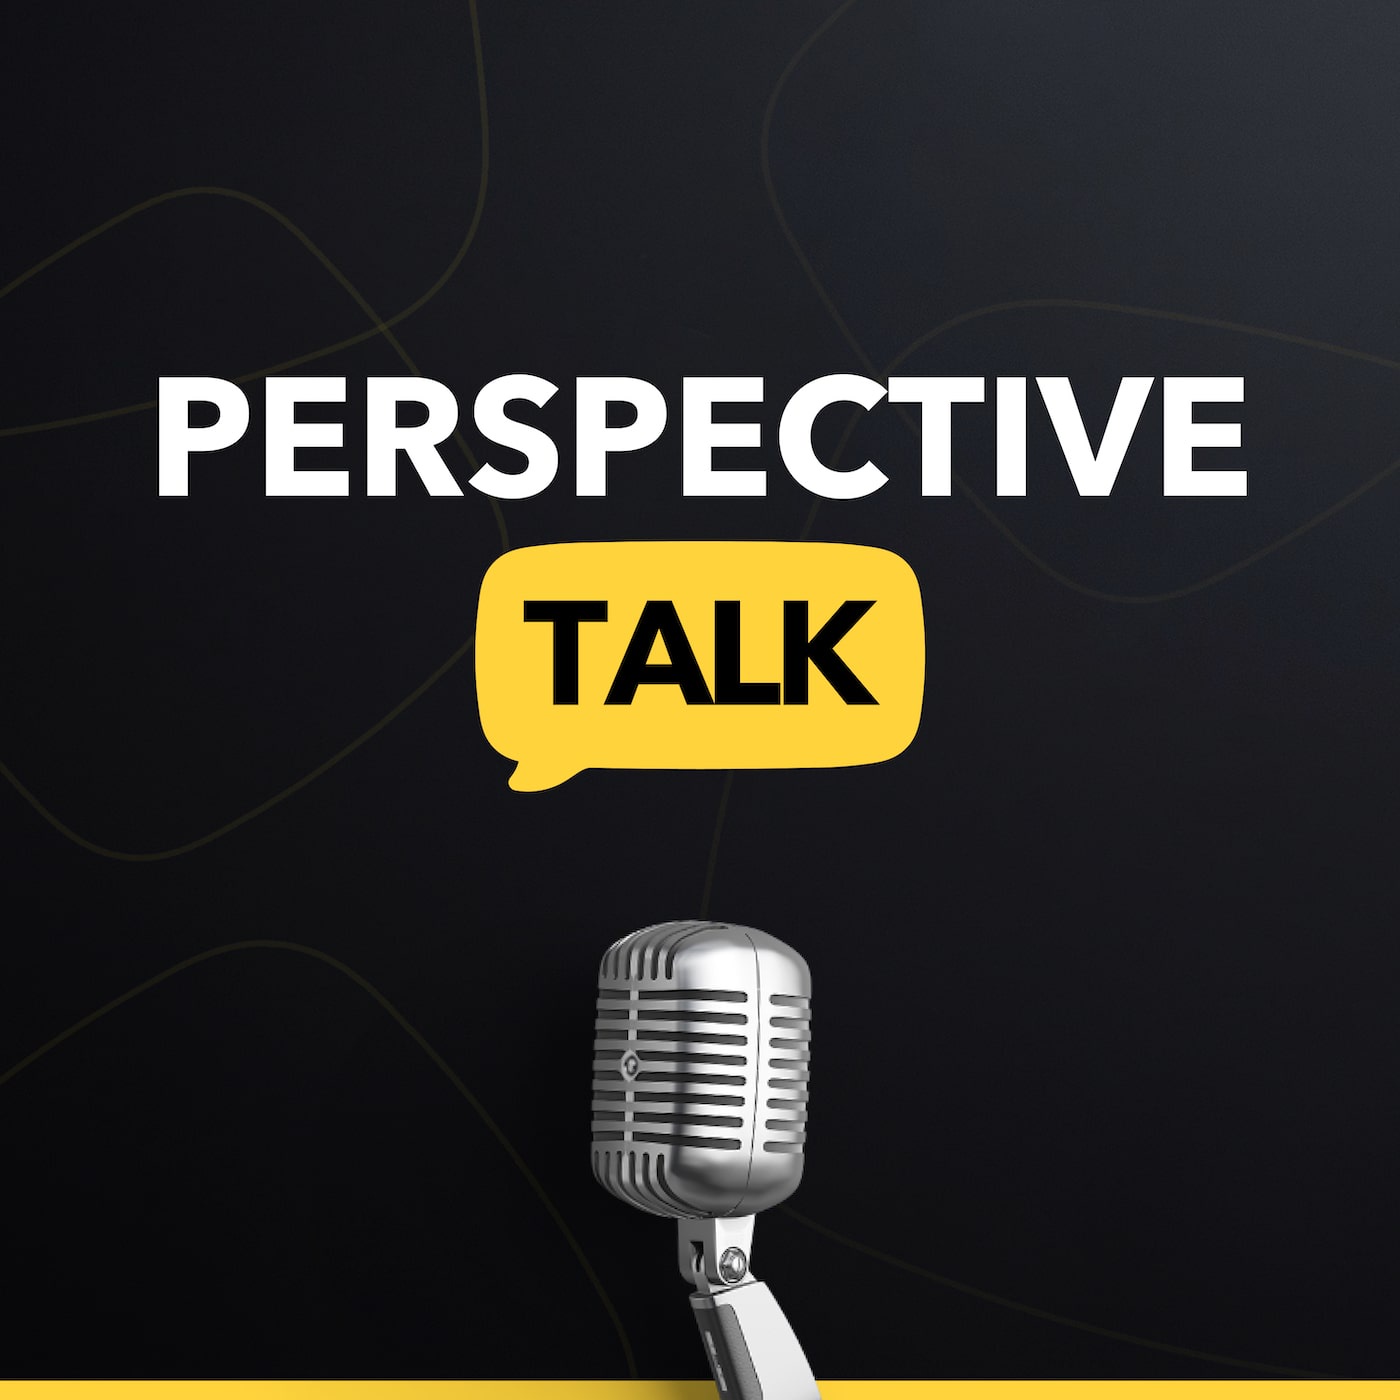 Perspective Talk - Der Funnel Marketing Podcast